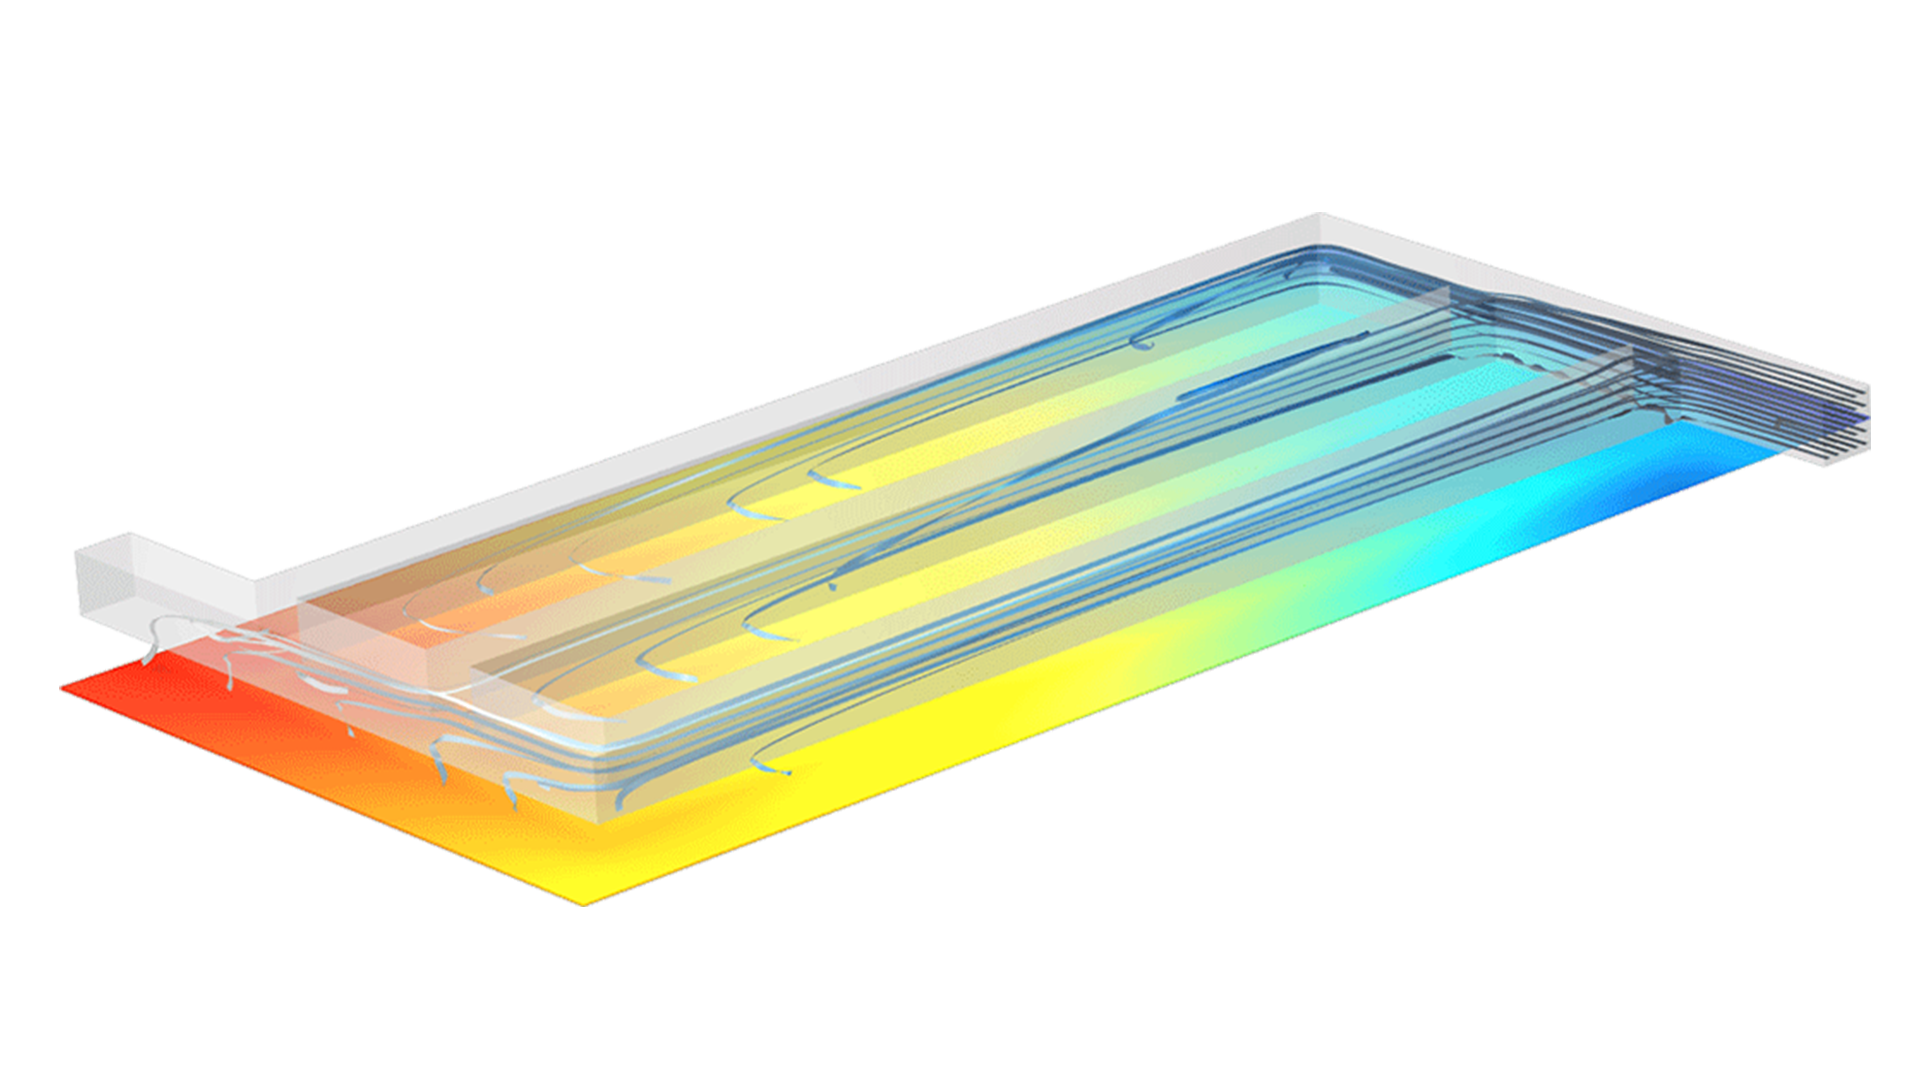 电解质隔膜模型，其中流线流经多个通道，下方的彩虹平面显示电流密度分布。